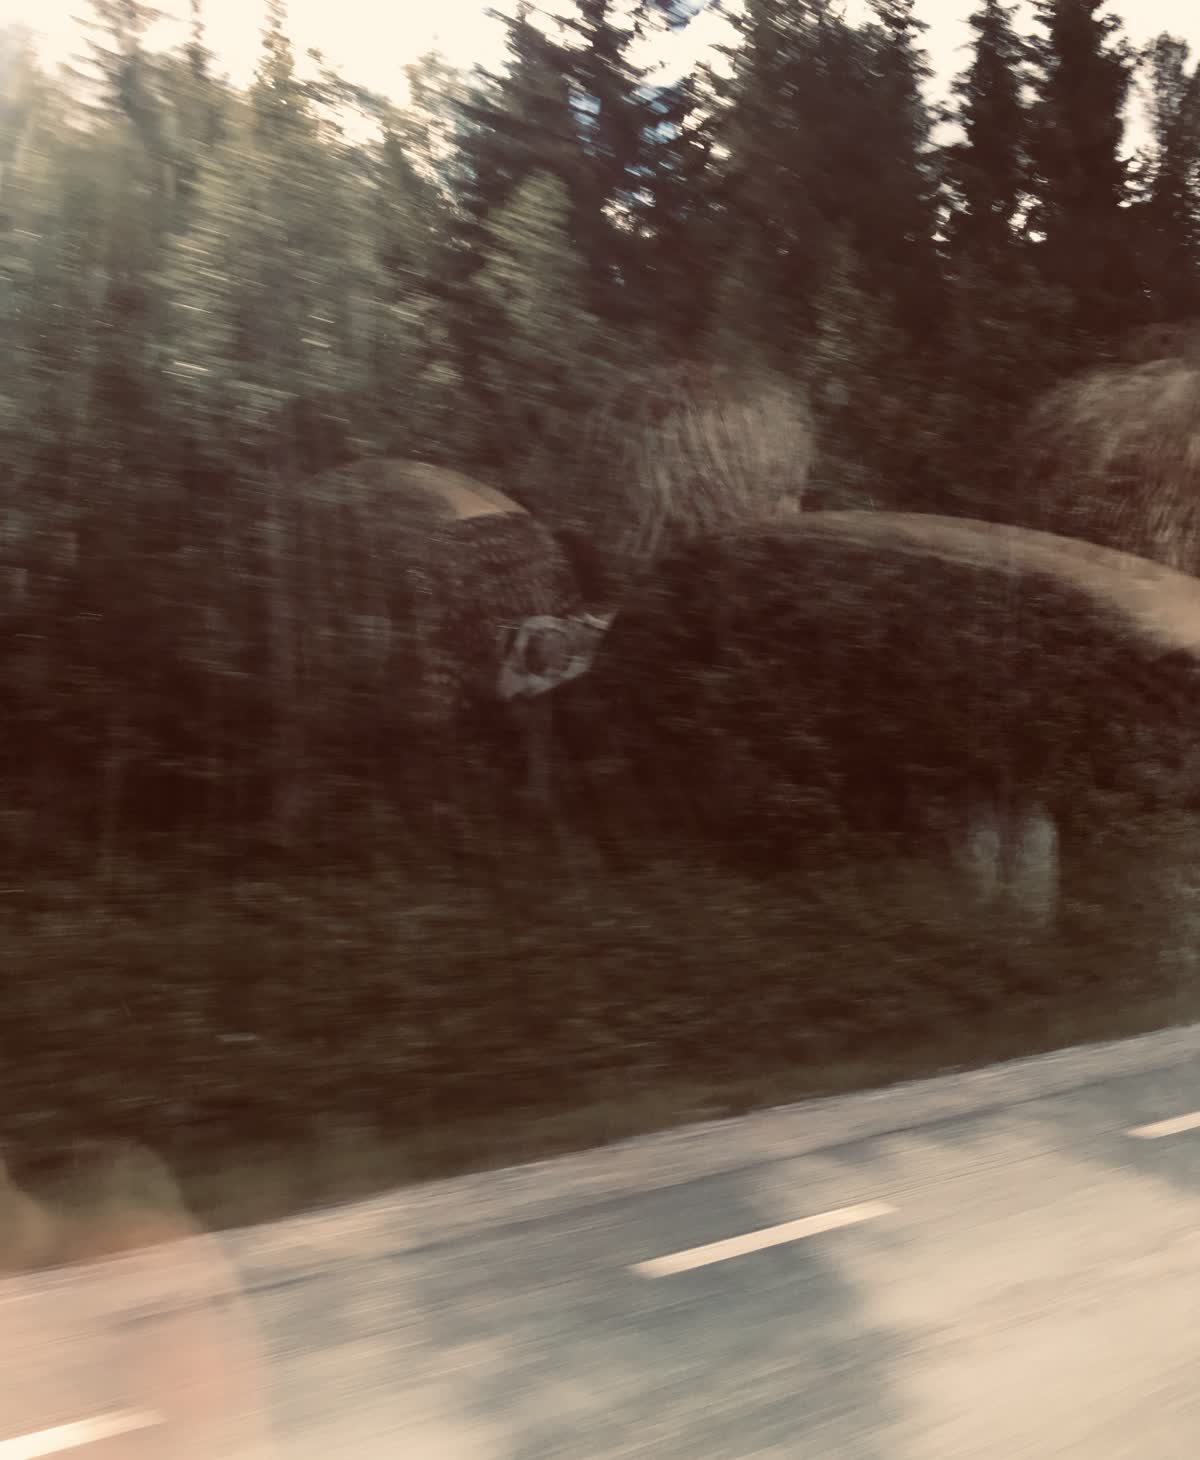 En suddig bild tagen från insidan av en buss mot en skog.